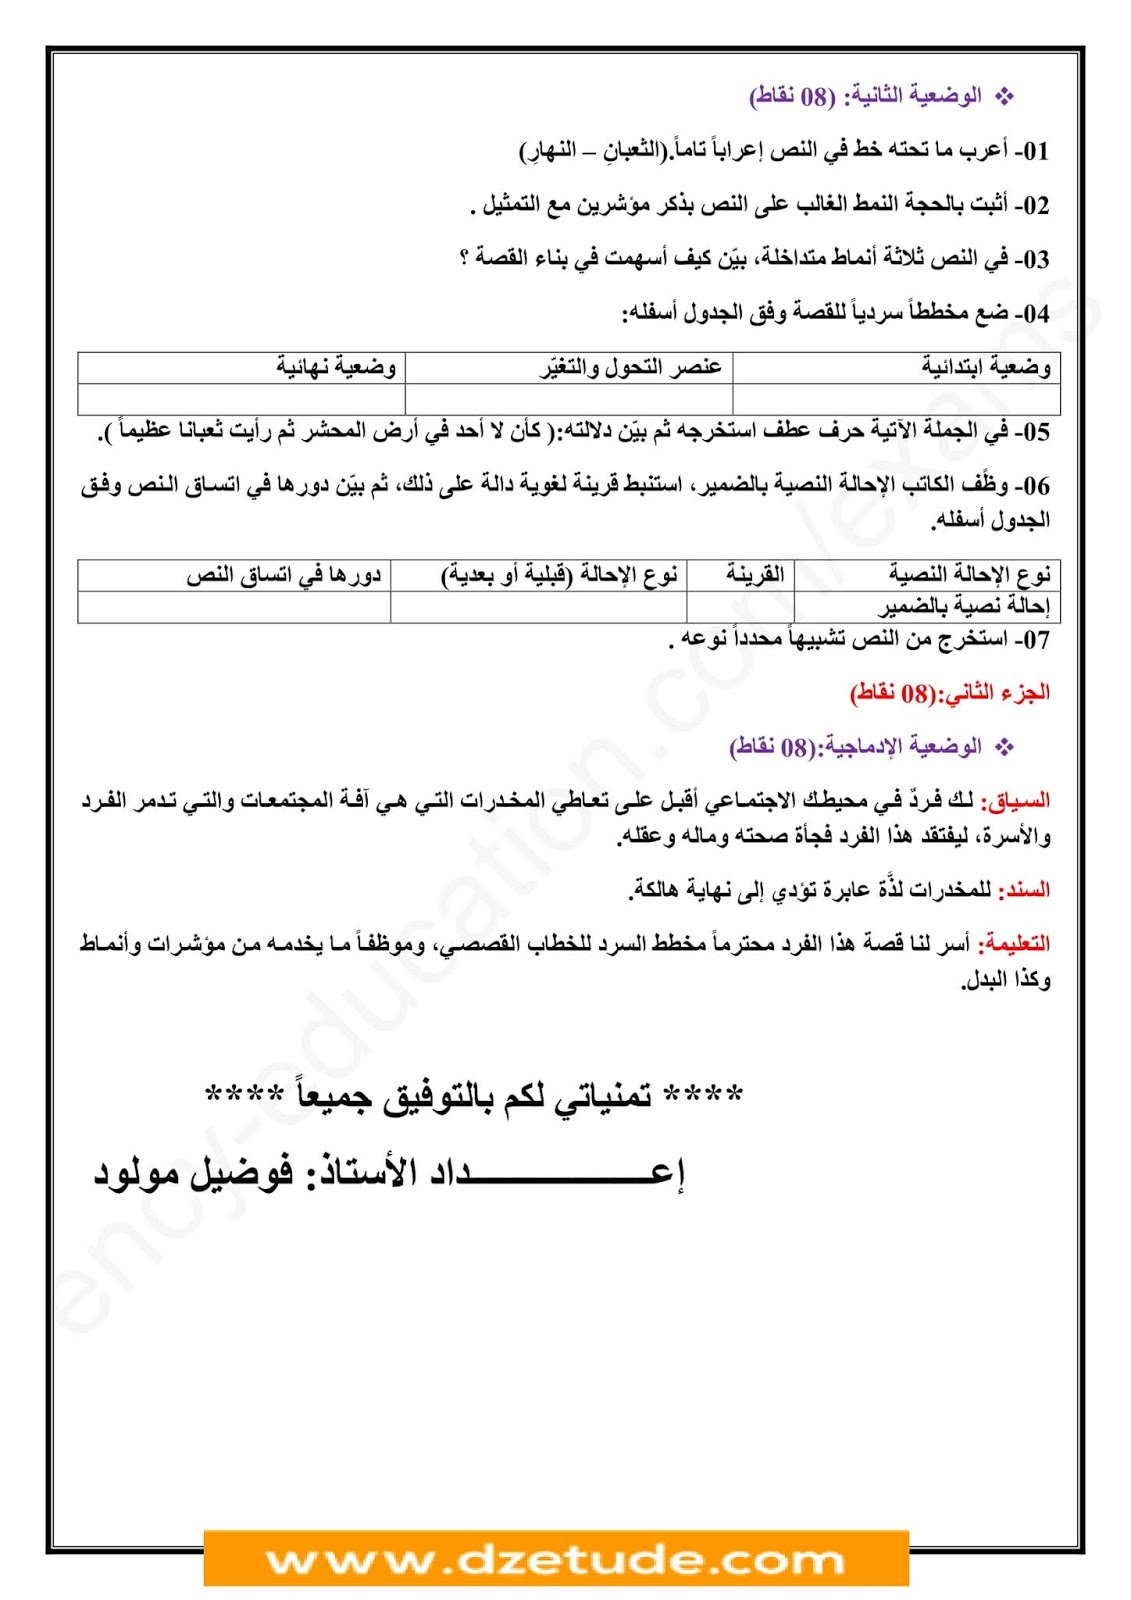 فرض الفصل الأول في اللغة العربية للسنة الرابعة متوسط - الجيل الثاني نموذج 10